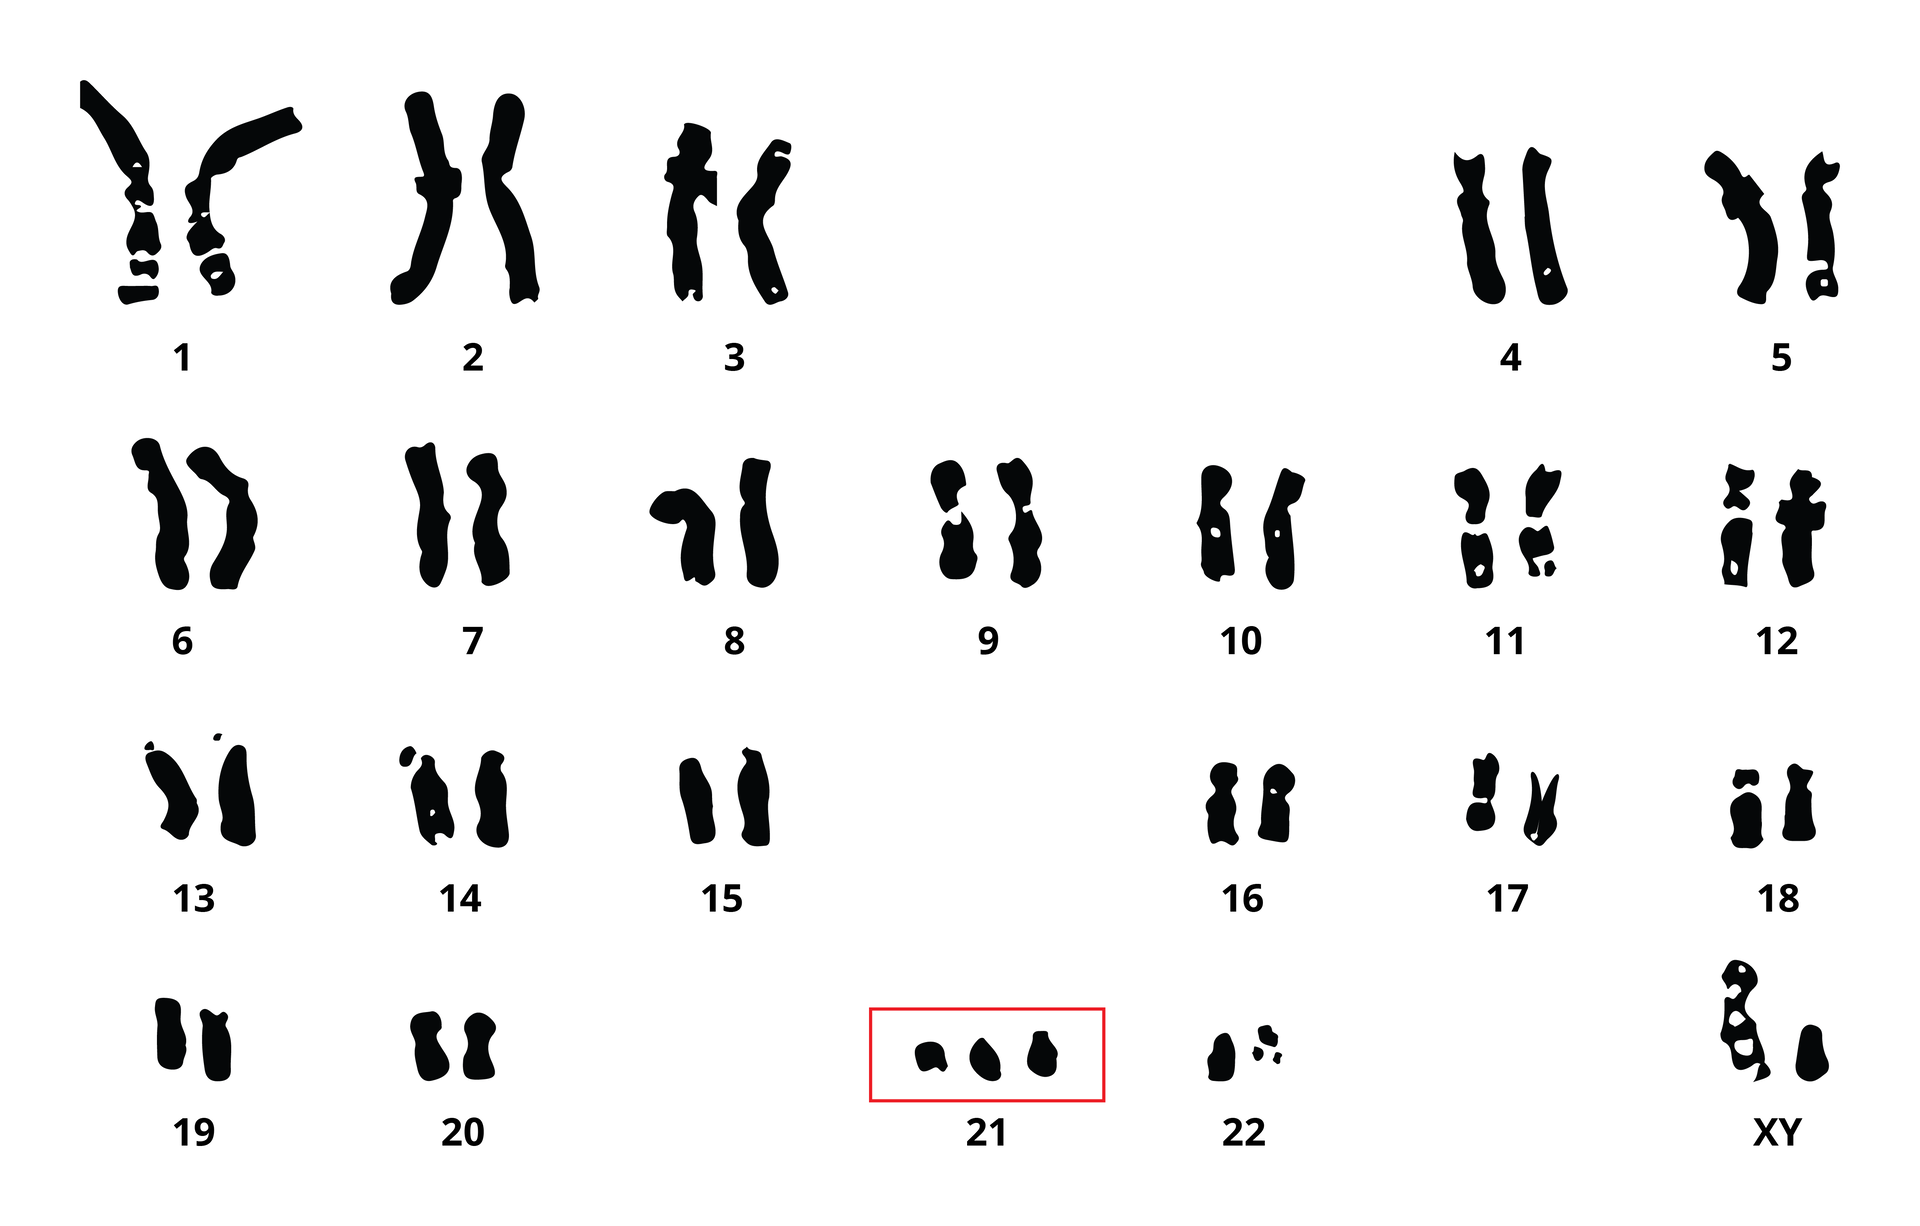 Ilustracja przedstawia zespół chromosomów osoby z zespołem Downa.Wszystkiei chromosomy tworzą pary, za wyjątkiem chromosomów 21, które jest 3. Jest to kariotyp mężczyzny, ostatnia para chromosomów to XY.